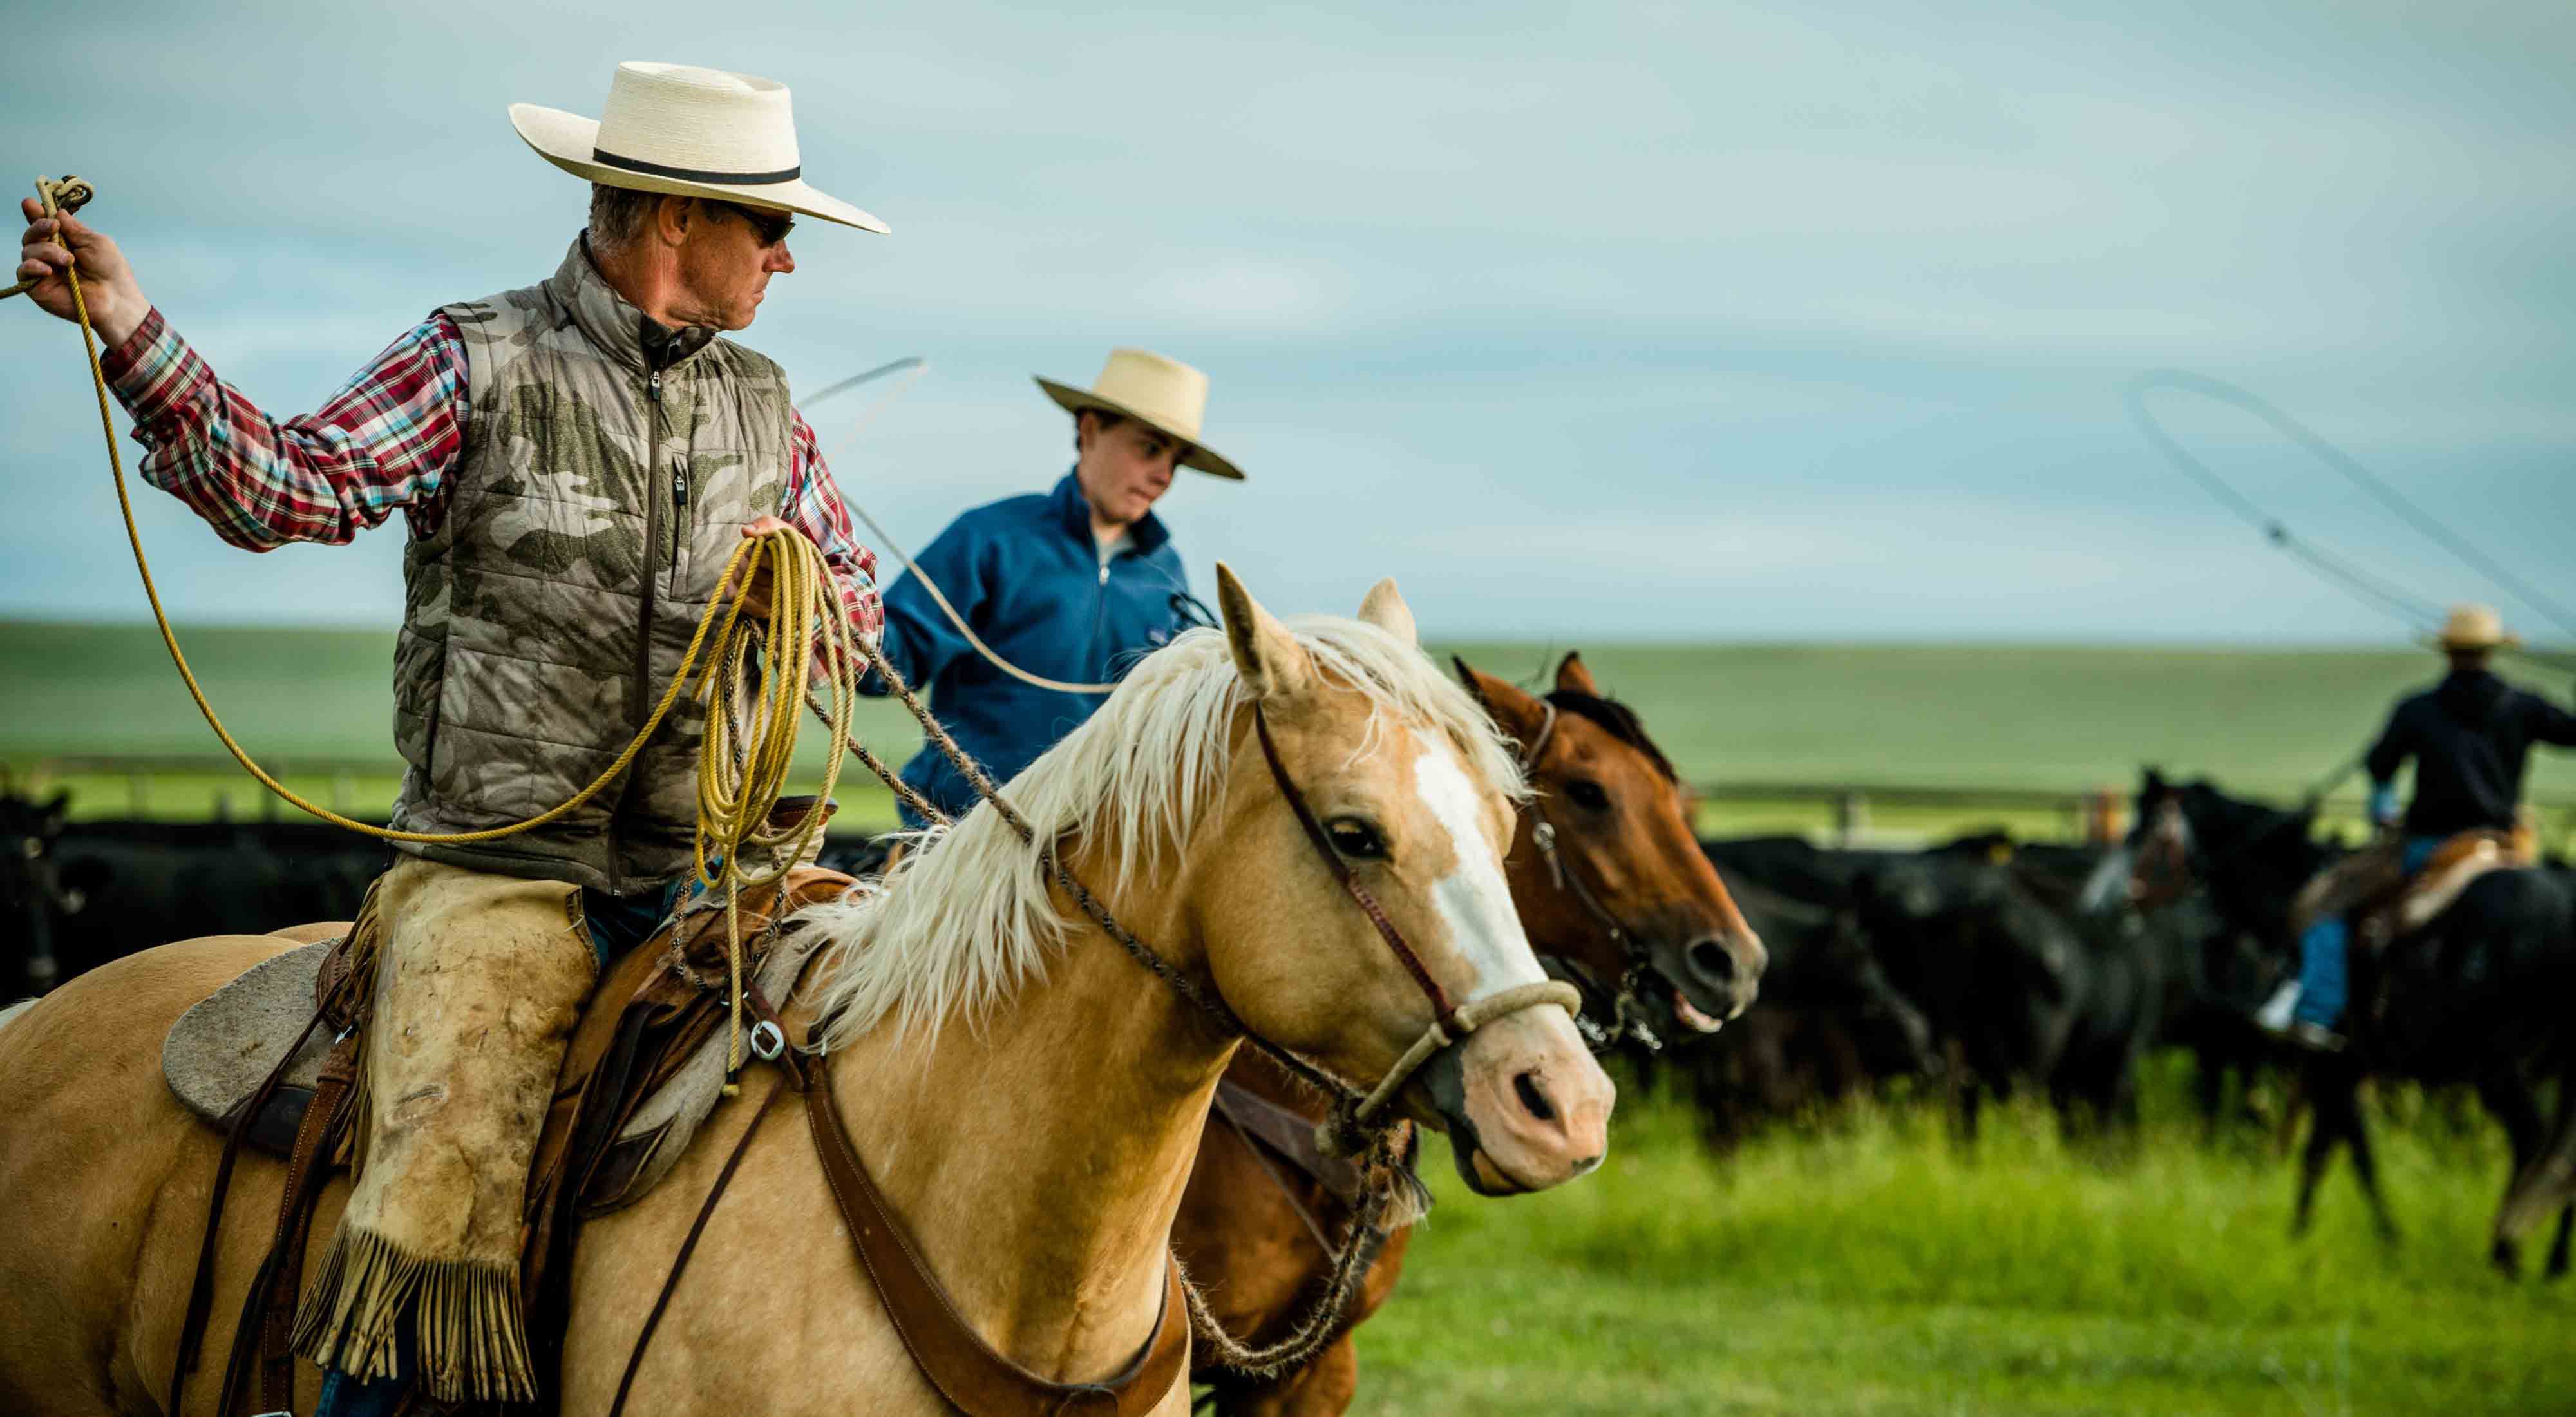 Two men on horseback herding cattle.